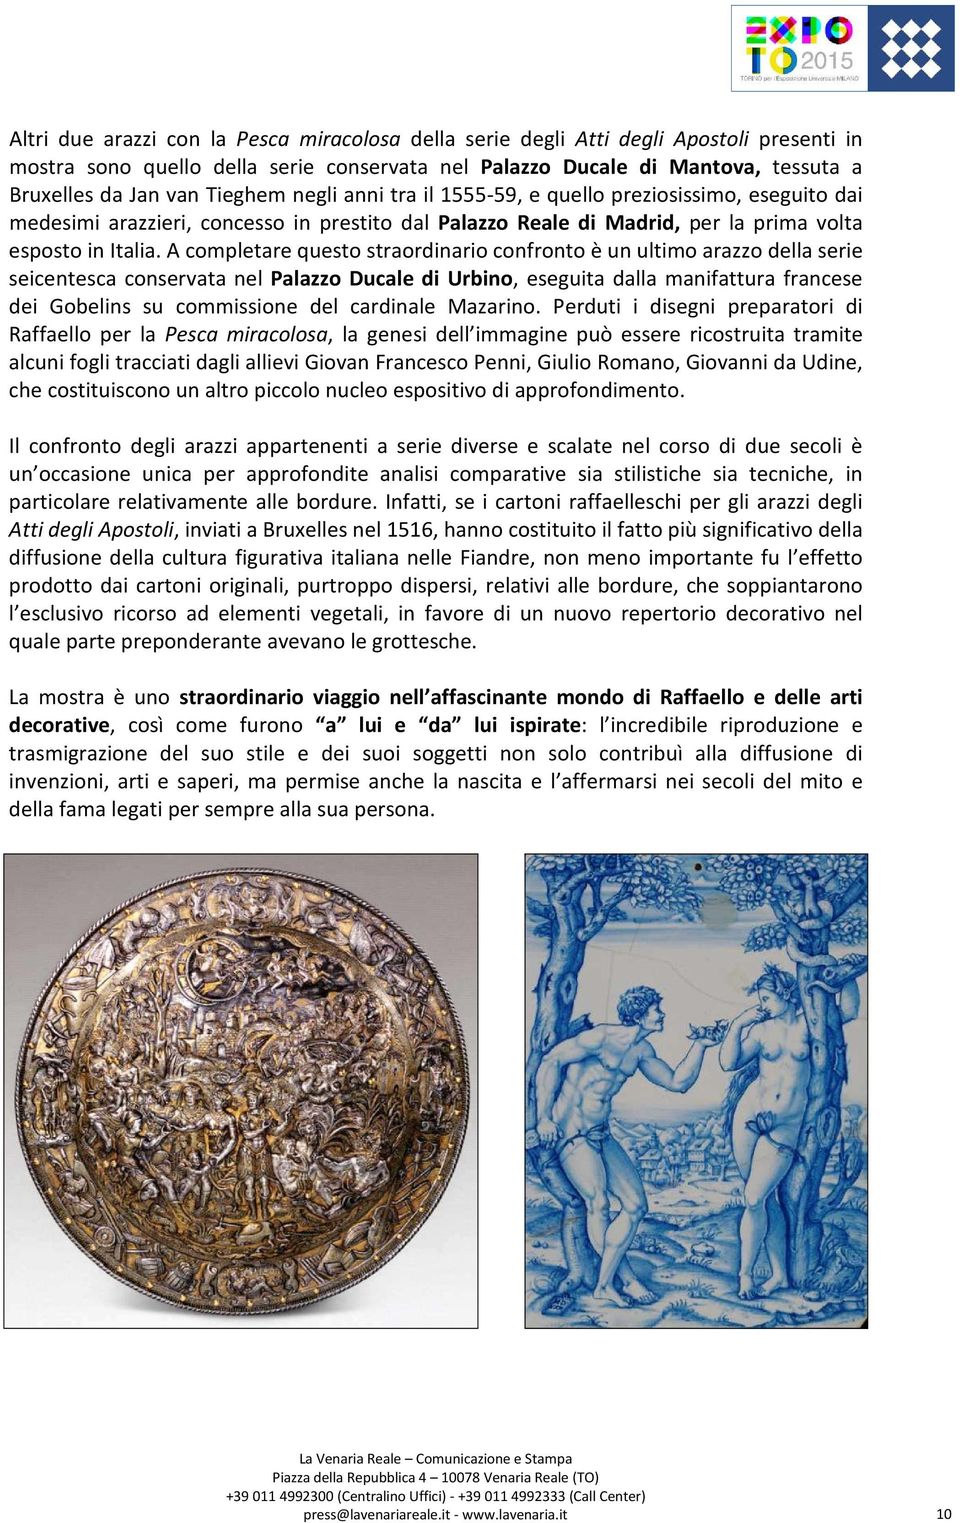 A completare questo straordinario confronto è un ultimo arazzo della serie seicentesca conservata nel Palazzo Ducale di Urbino, eseguita dalla manifattura francese dei Gobelins su commissione del